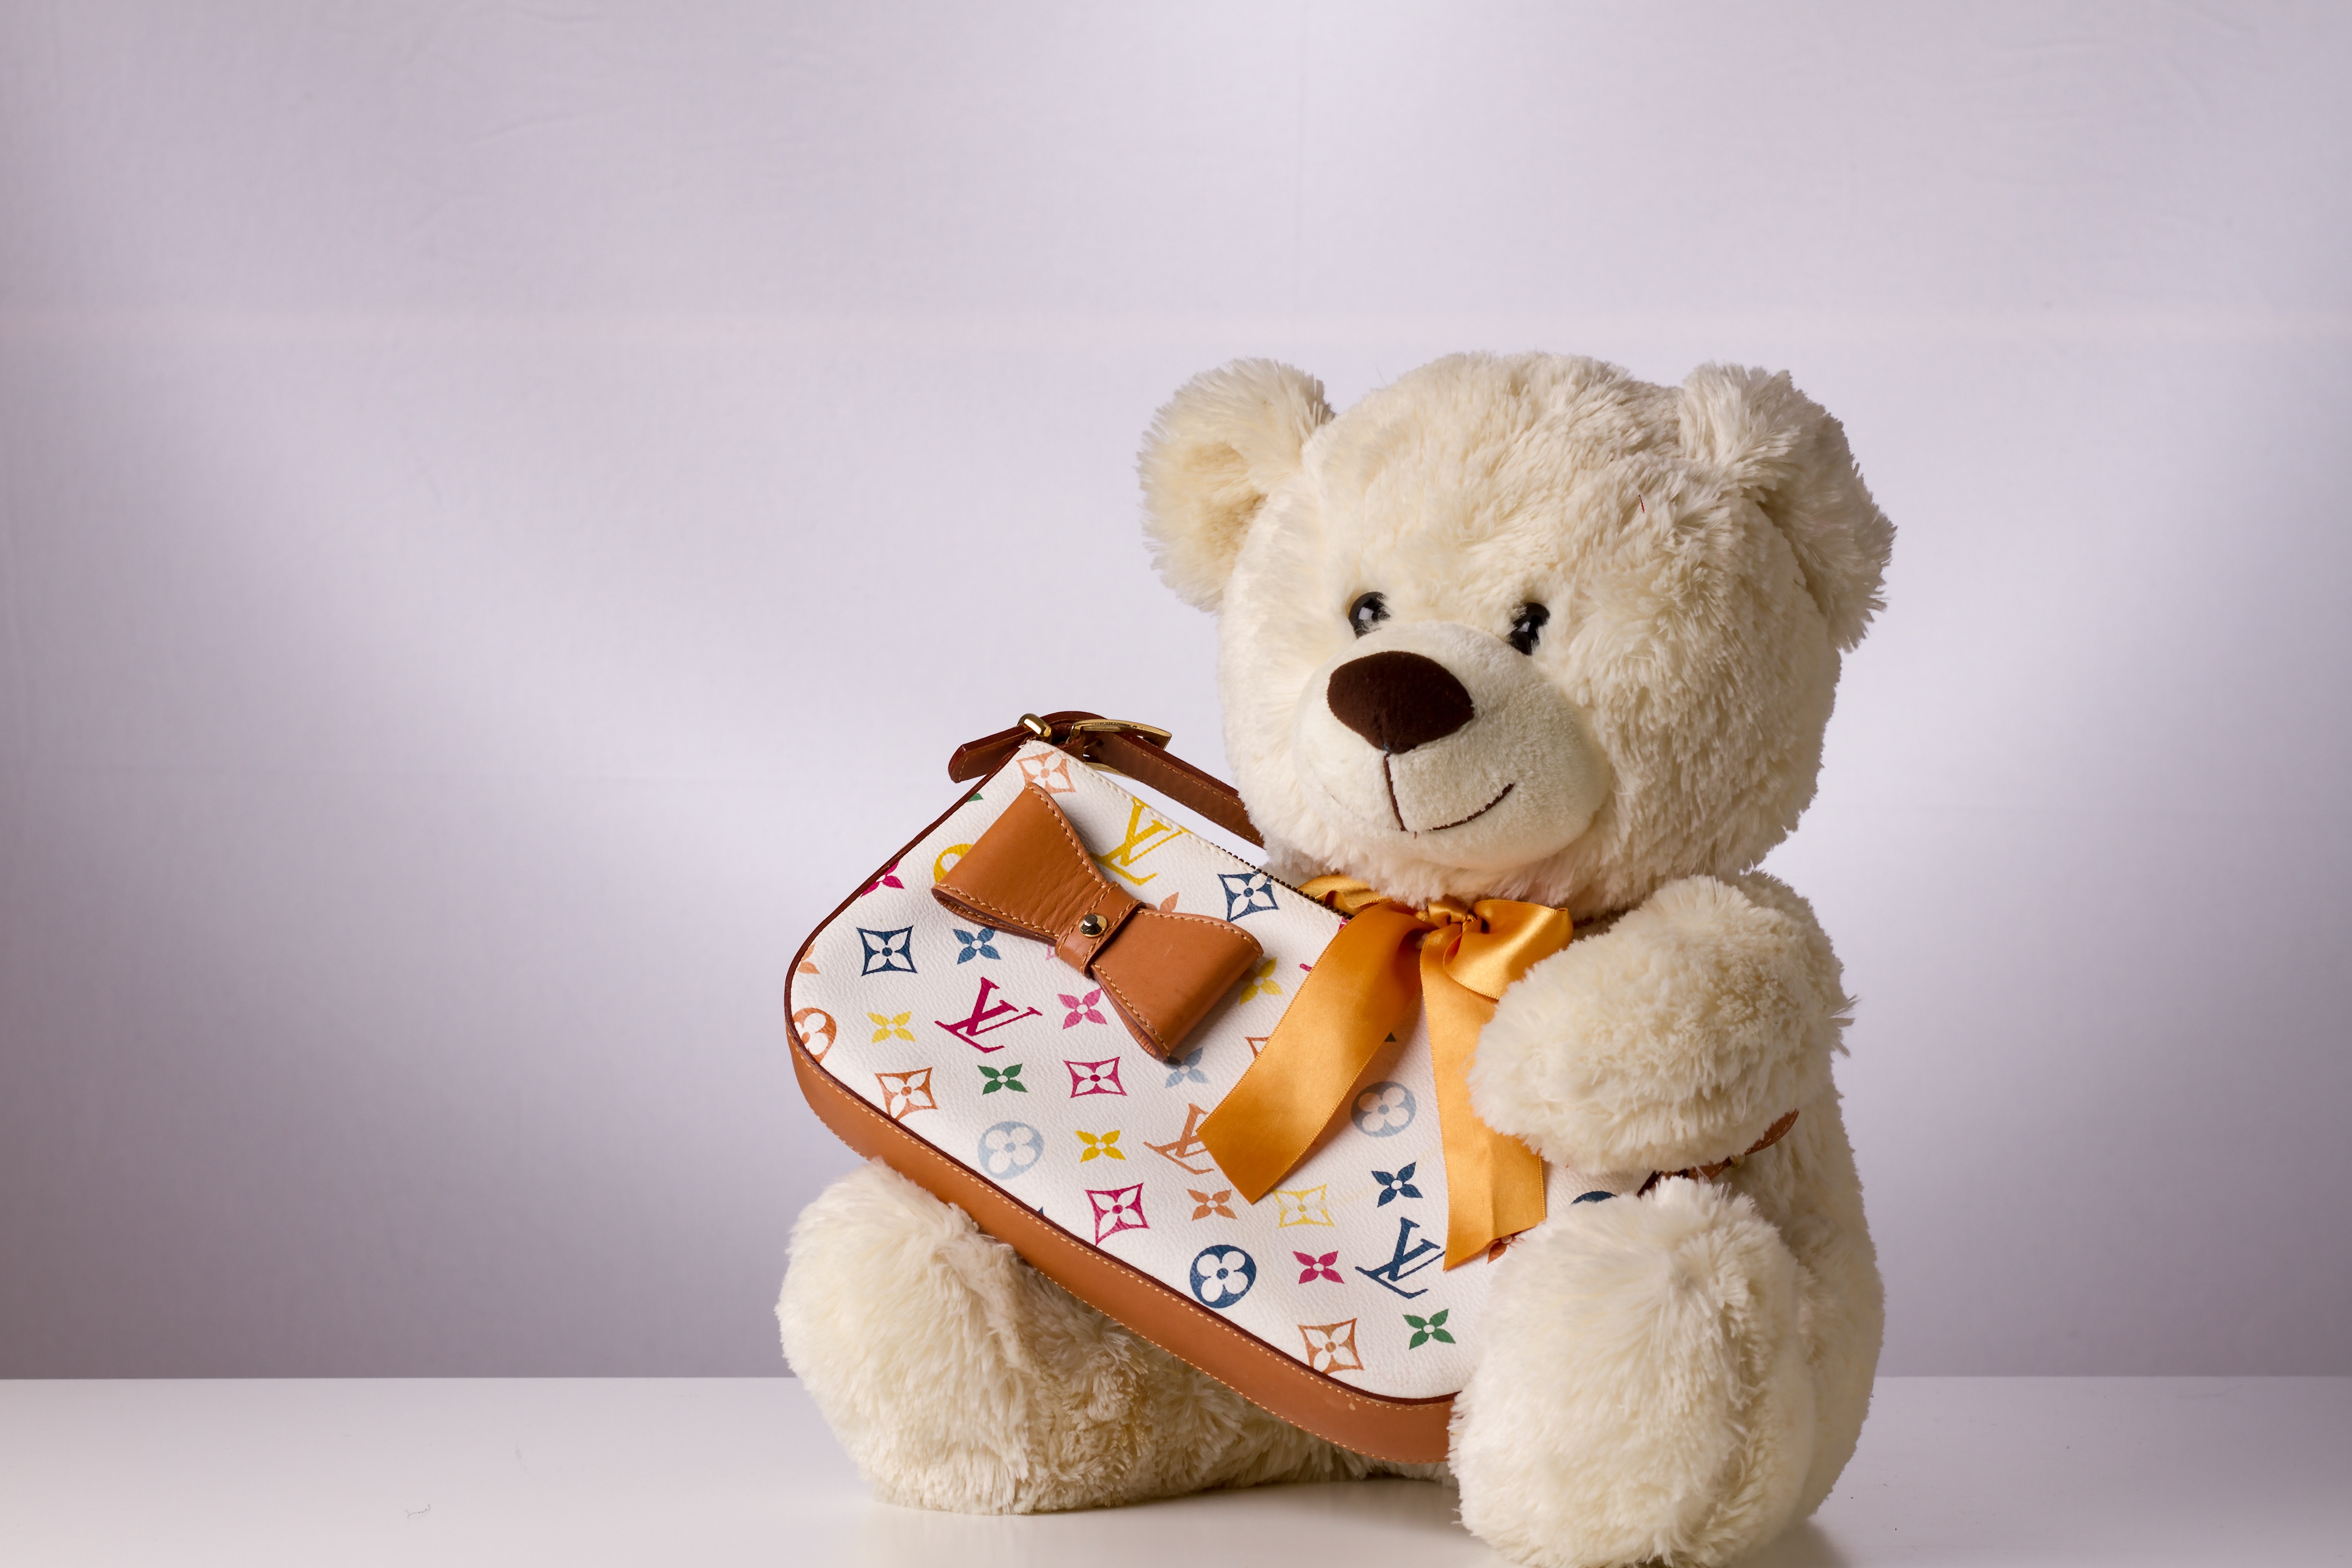 Teddy Bear with a Handbag by Christine Sponchia